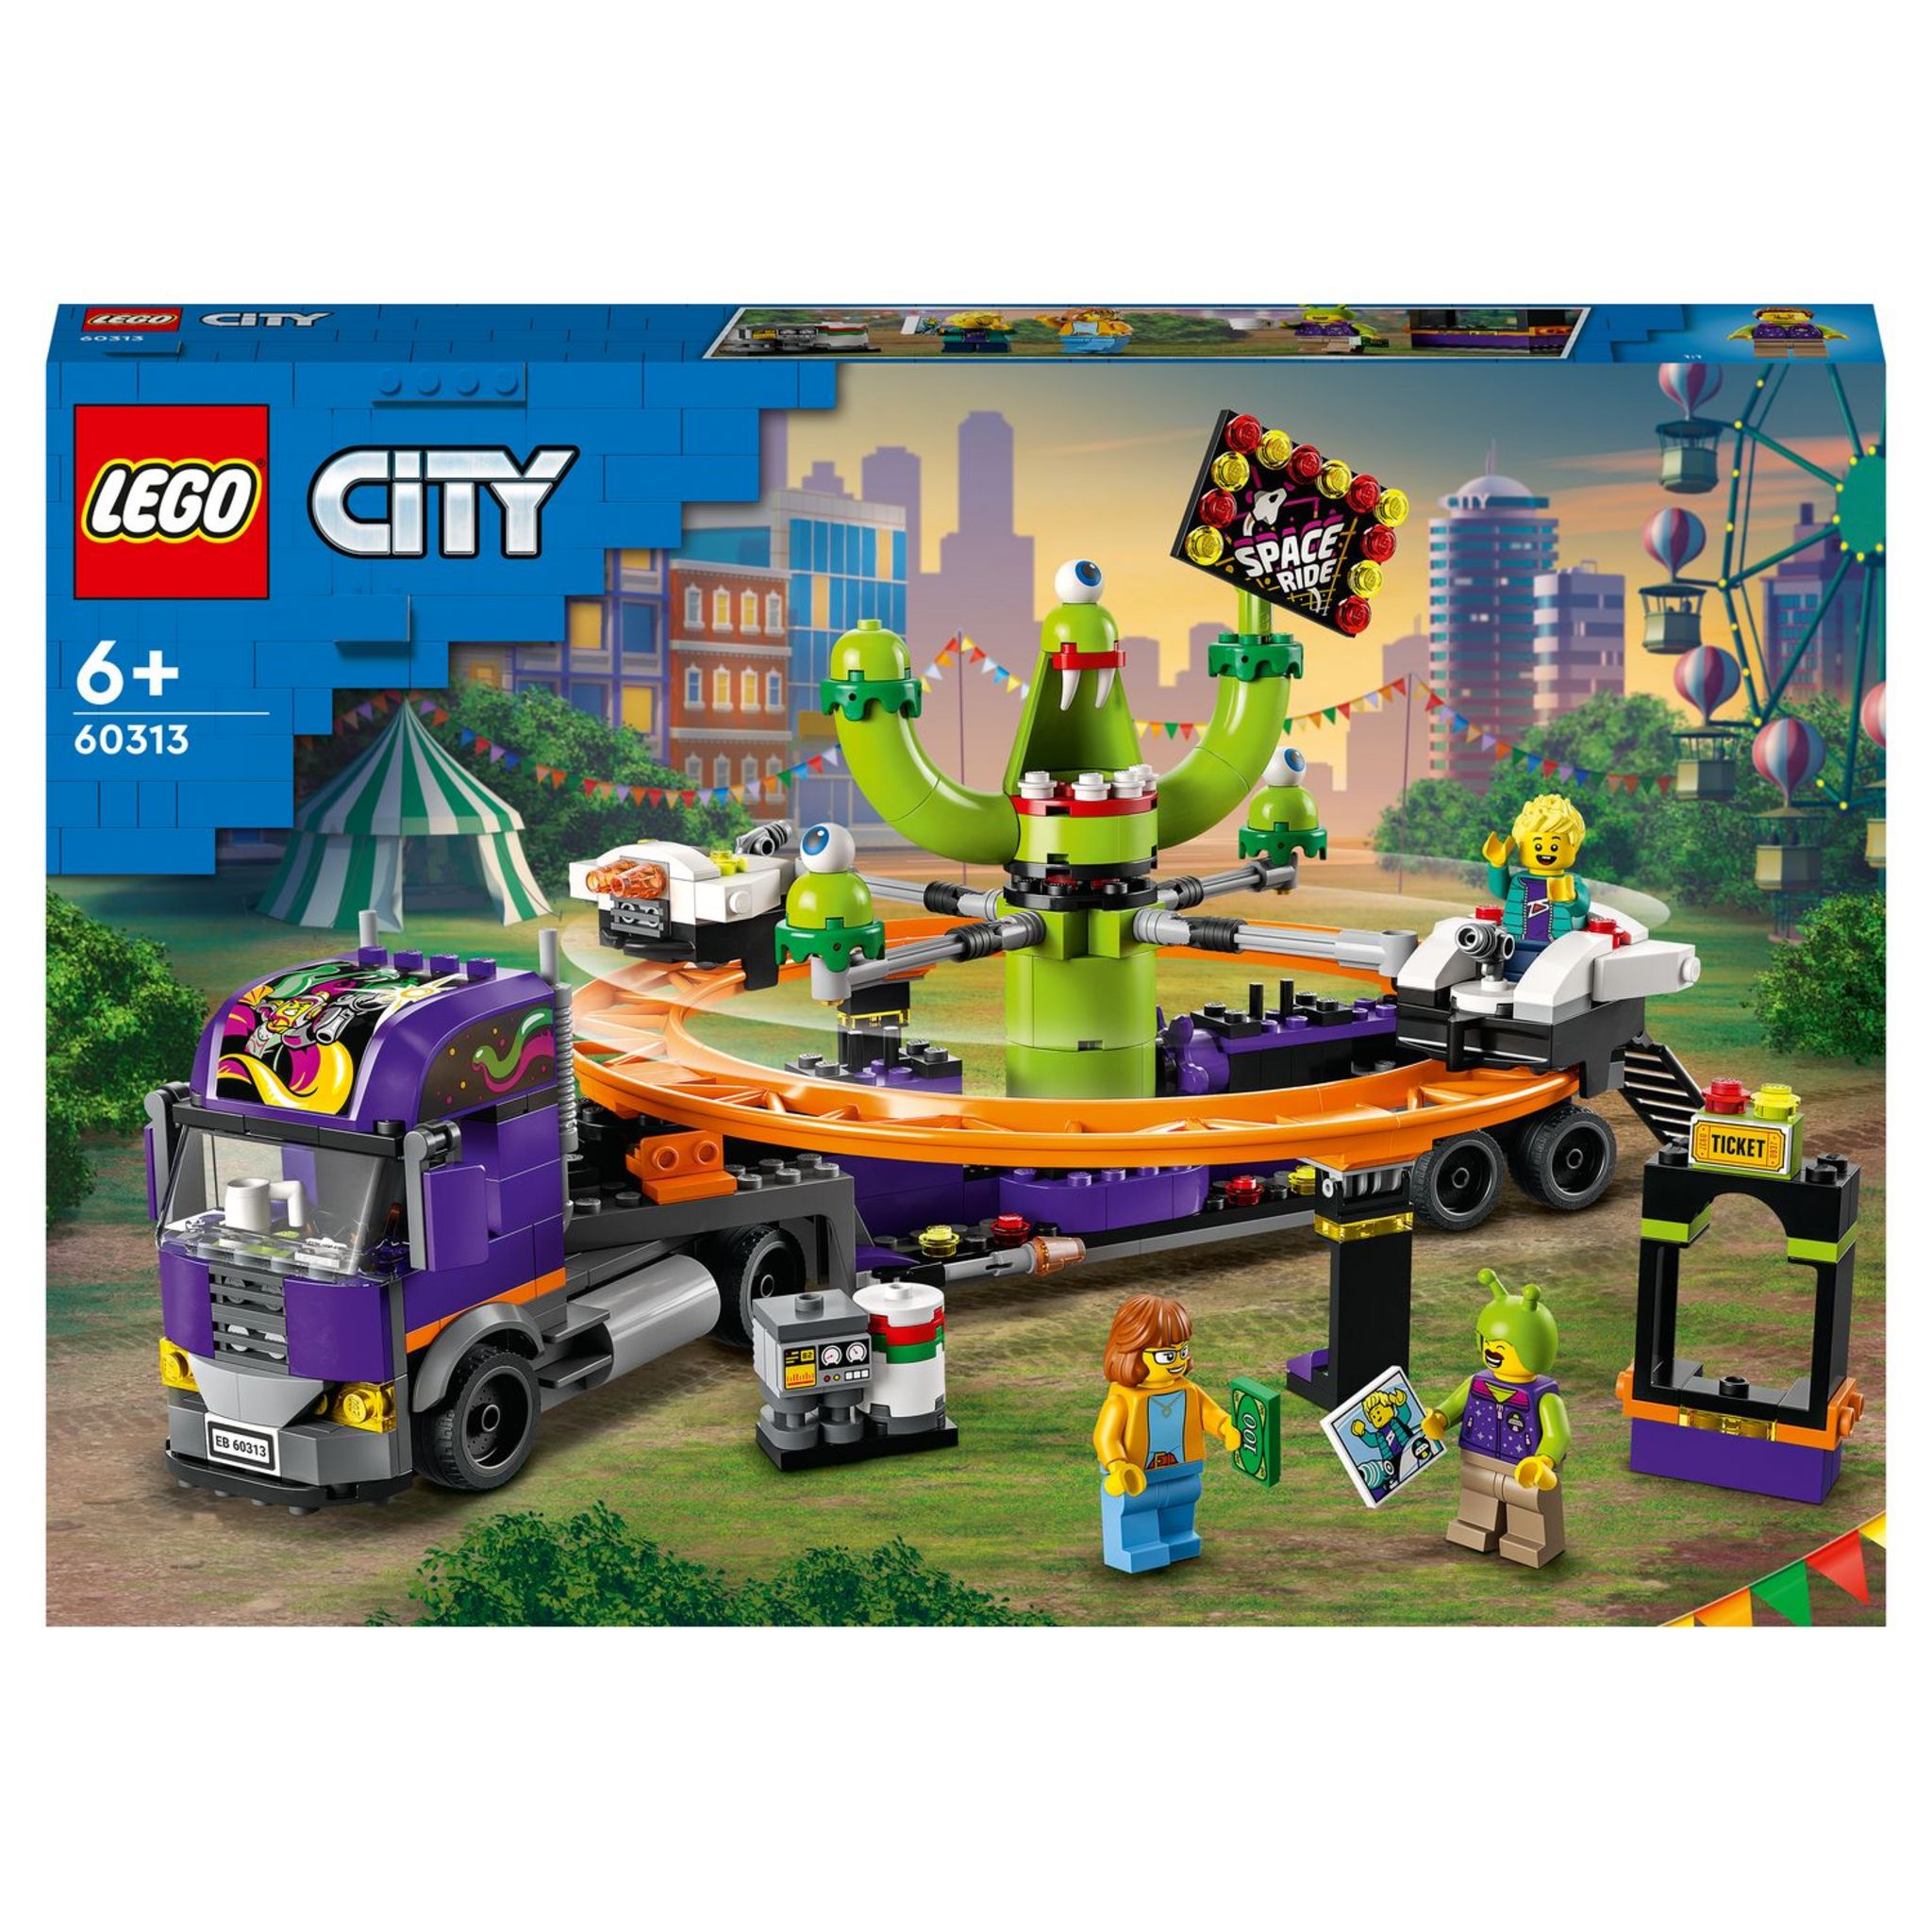 LEGO City 60313 Le Manège de l’Espace sur son Camion